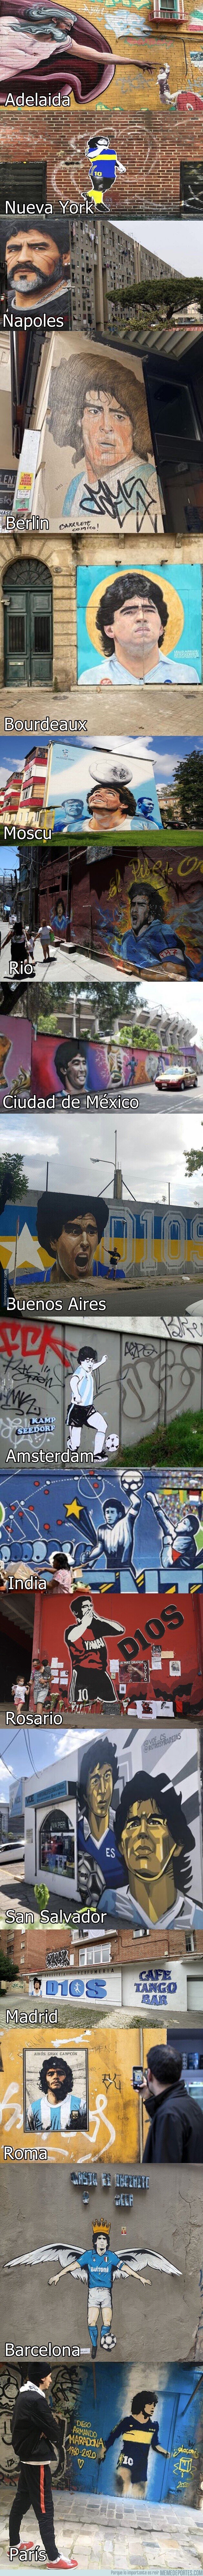 1123350 - Murales de Maradona alrededor del mundo